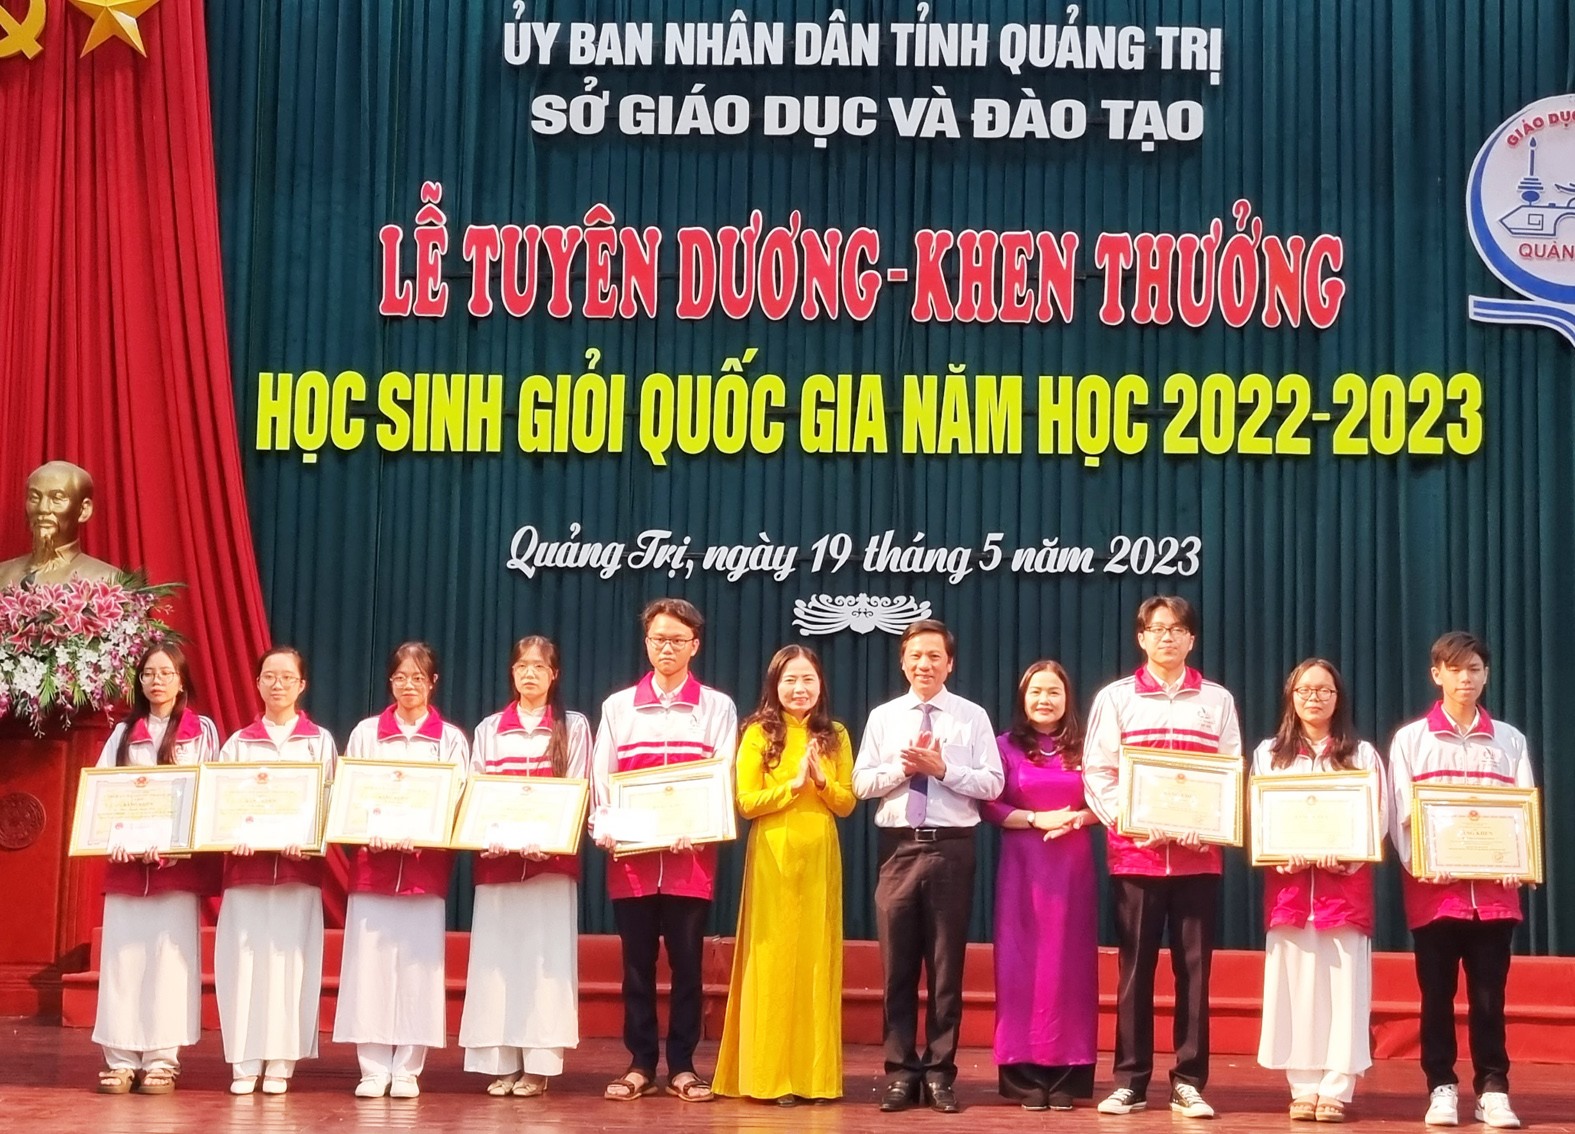 Các học sinh đoạt giải Nhì HSGQG được tặng bằng khen của Bộ trưởng Bộ GD&ĐT và bằng khen của Chủ tịch UBND tỉnh - Ảnh Tú Linh